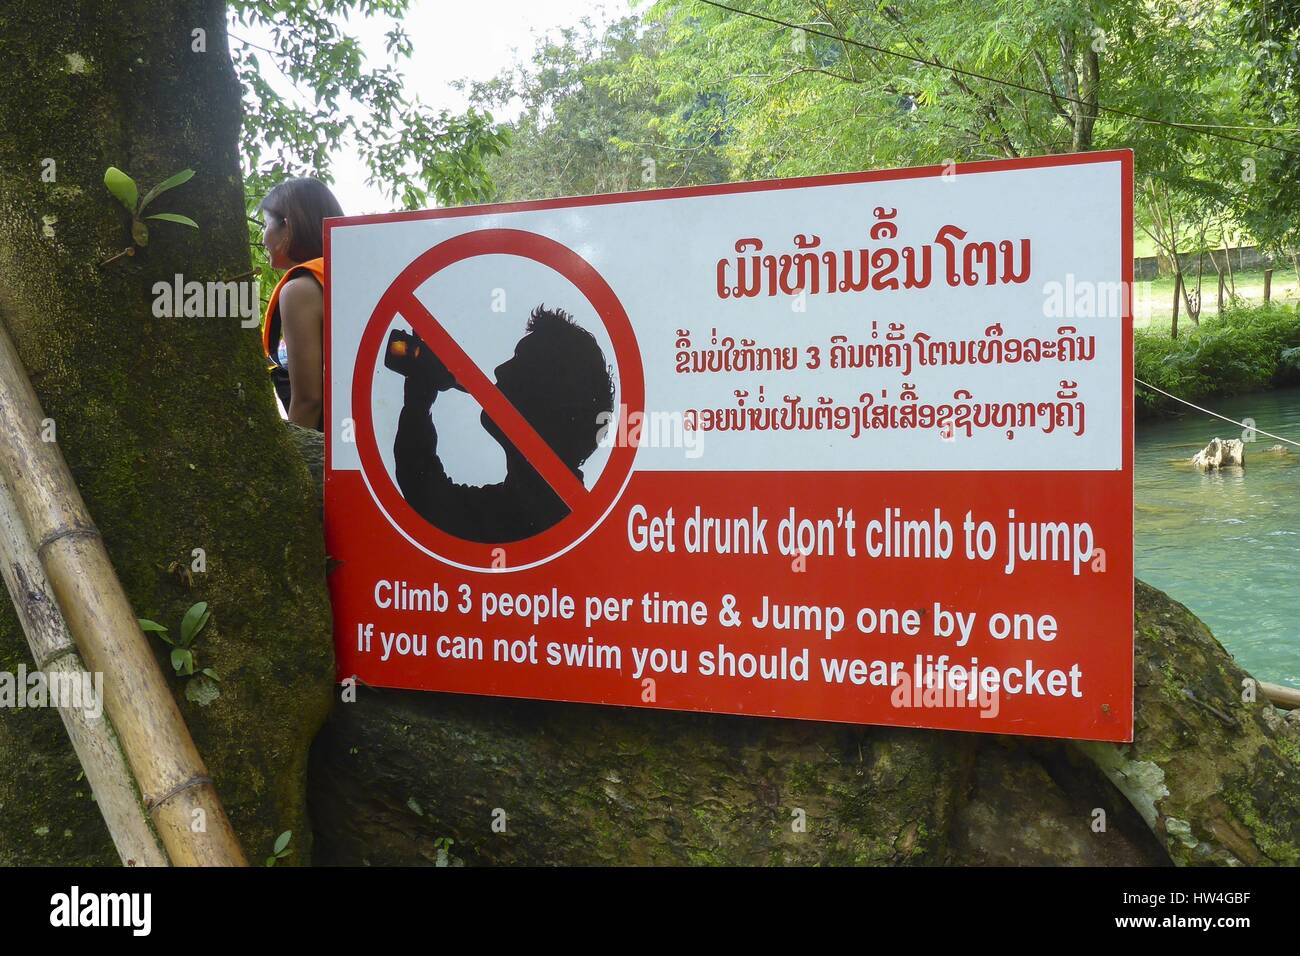 Nam Song River Februar 2017 Plakat Warnung erhalten betrunken nicht springen Klettern Klettern 3 Personen pro Zeit Sprung eins nach dem anderen, wenn Sie nicht, Sie schwimmen können sollten Lifejecket Rettungsweste tragen | weltweite Nutzung Stockfoto